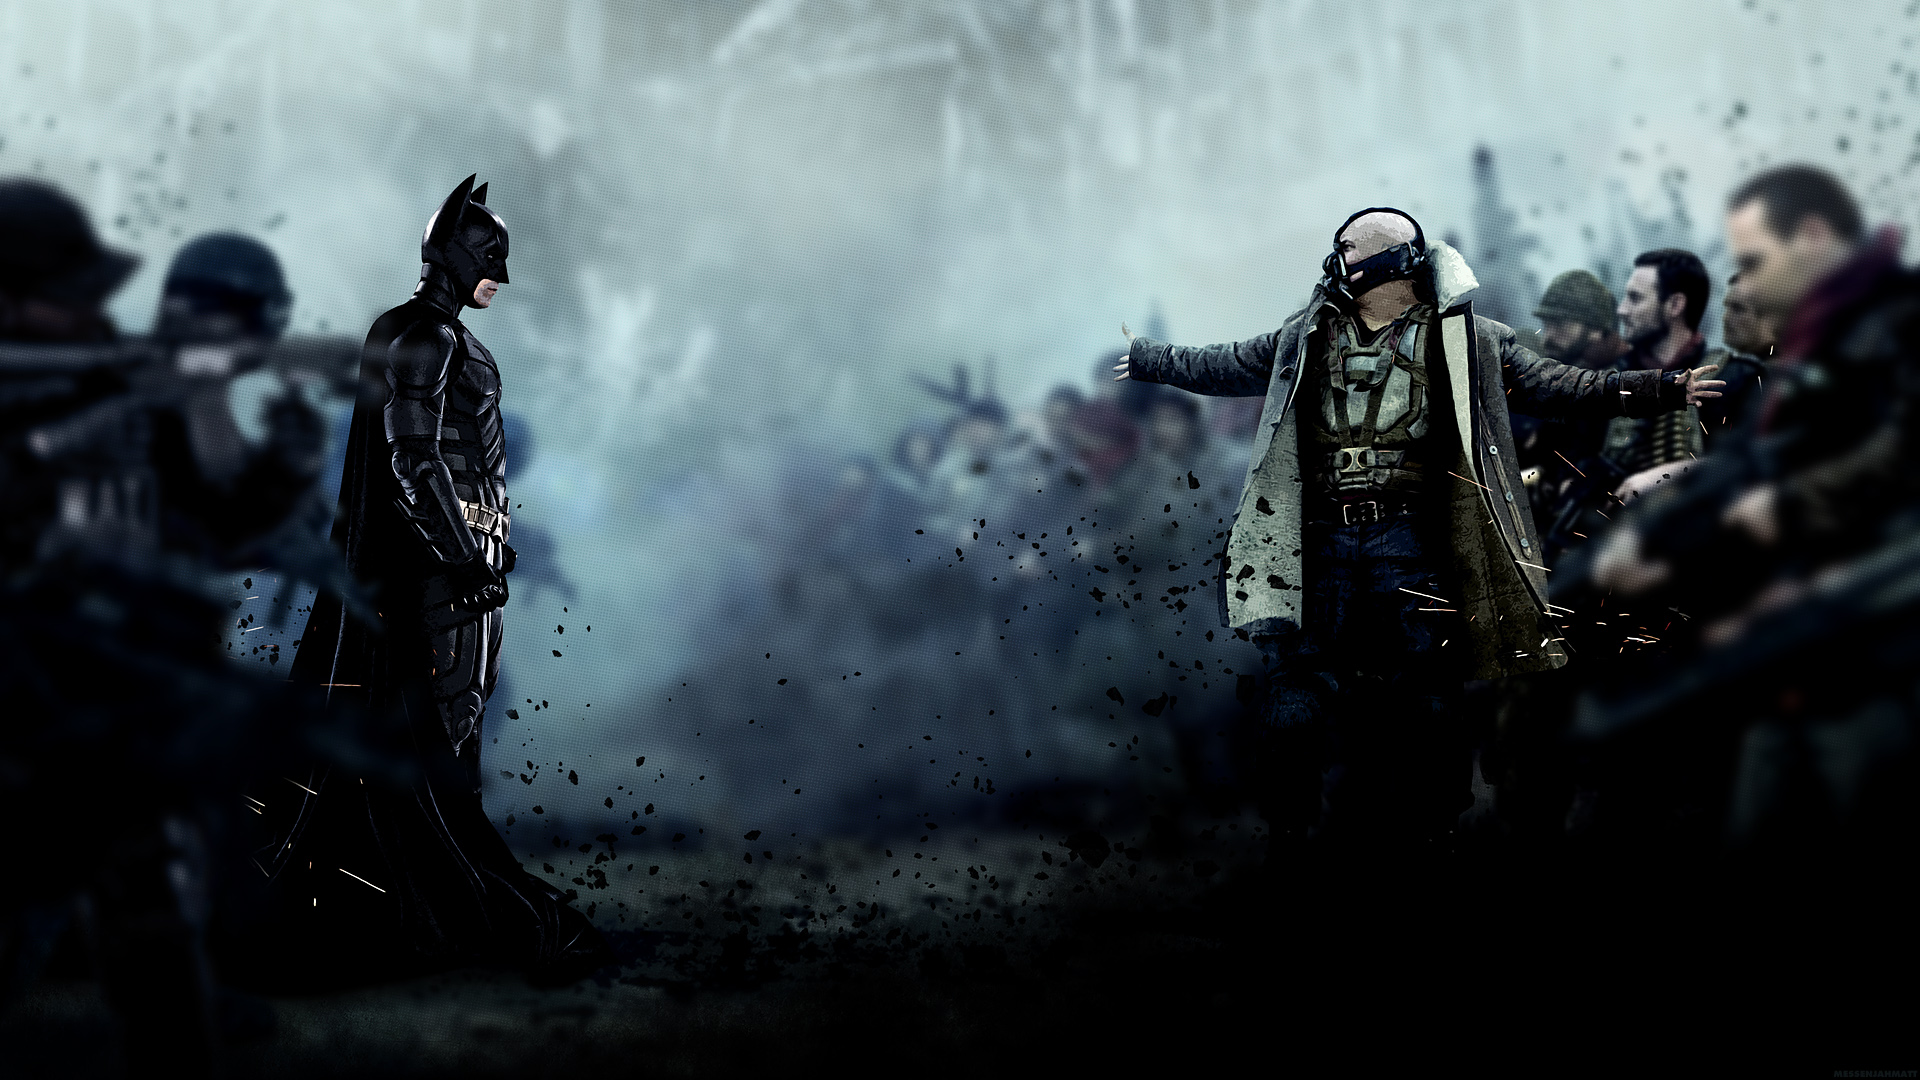 DARK KNIGHT RISES batman superhero bane hd wallpaper | 1920x1080 ...